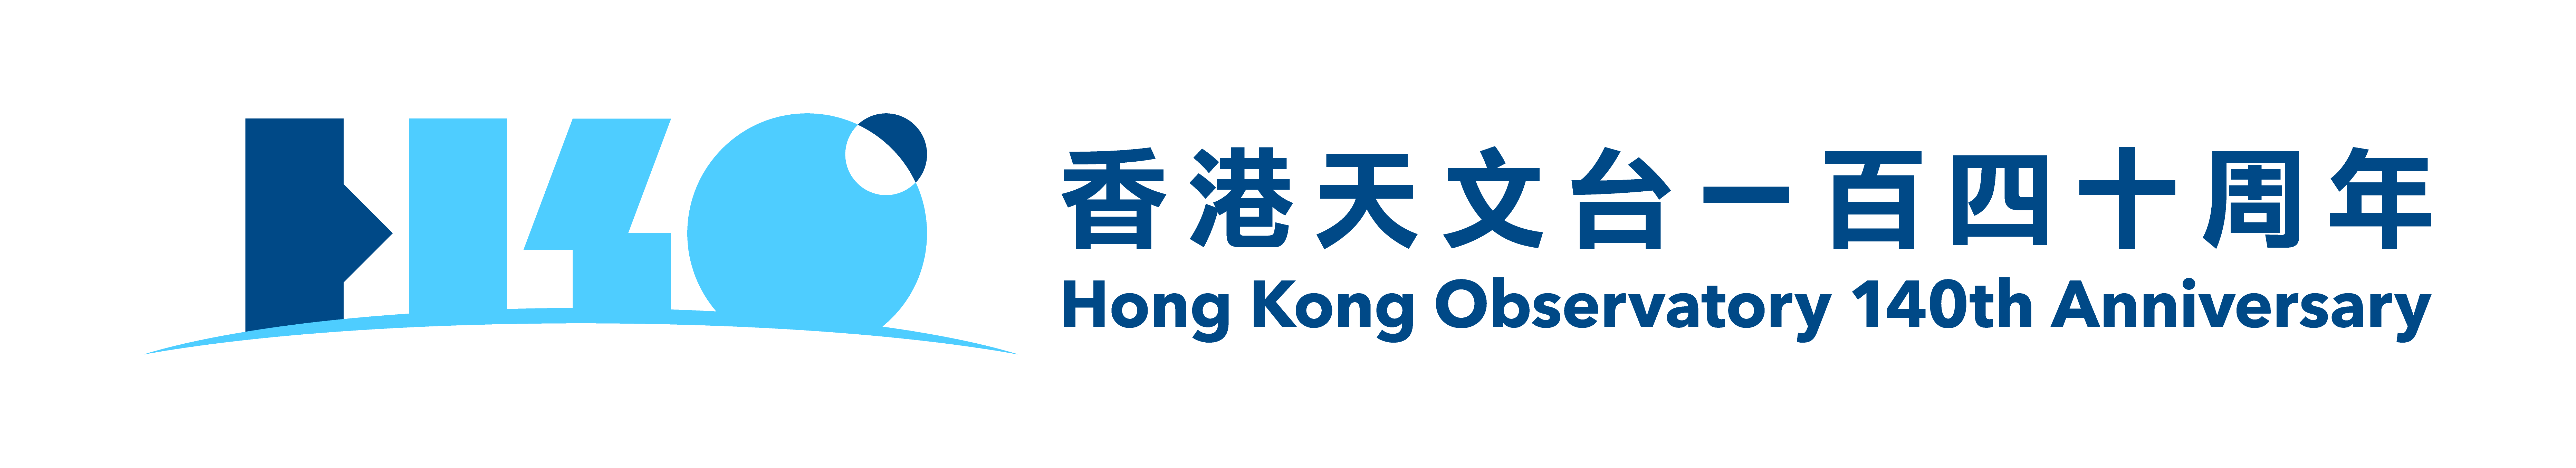 香港天文台140周年标志。